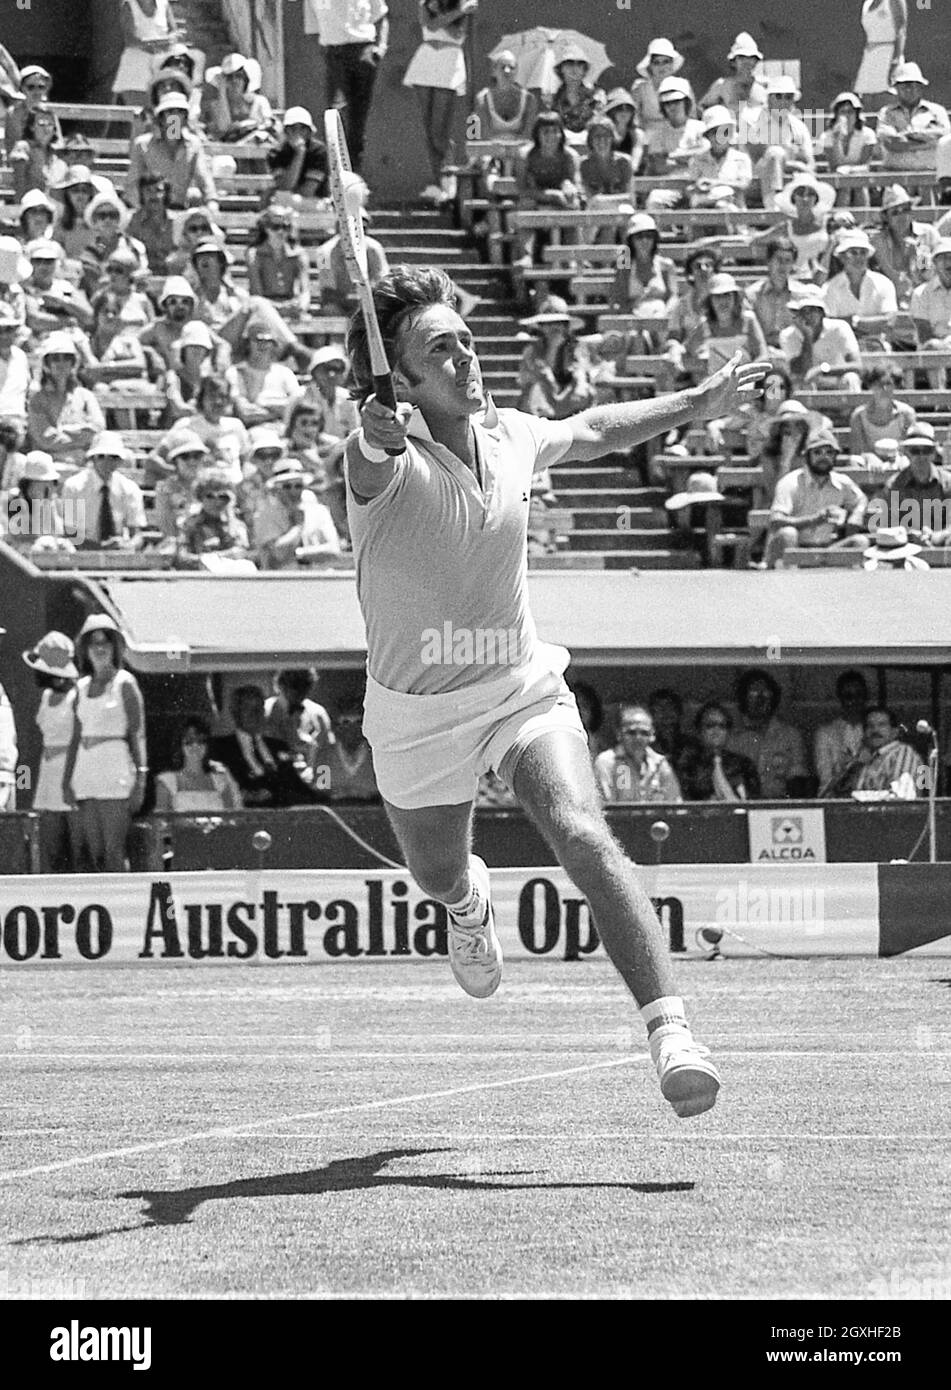 Ross case, Australian Open 1976, Quarter final, Kooyong Lawn tennis Club, 26 Dez.1975 - 4 janv. 1976, Melbourne. Banque D'Images